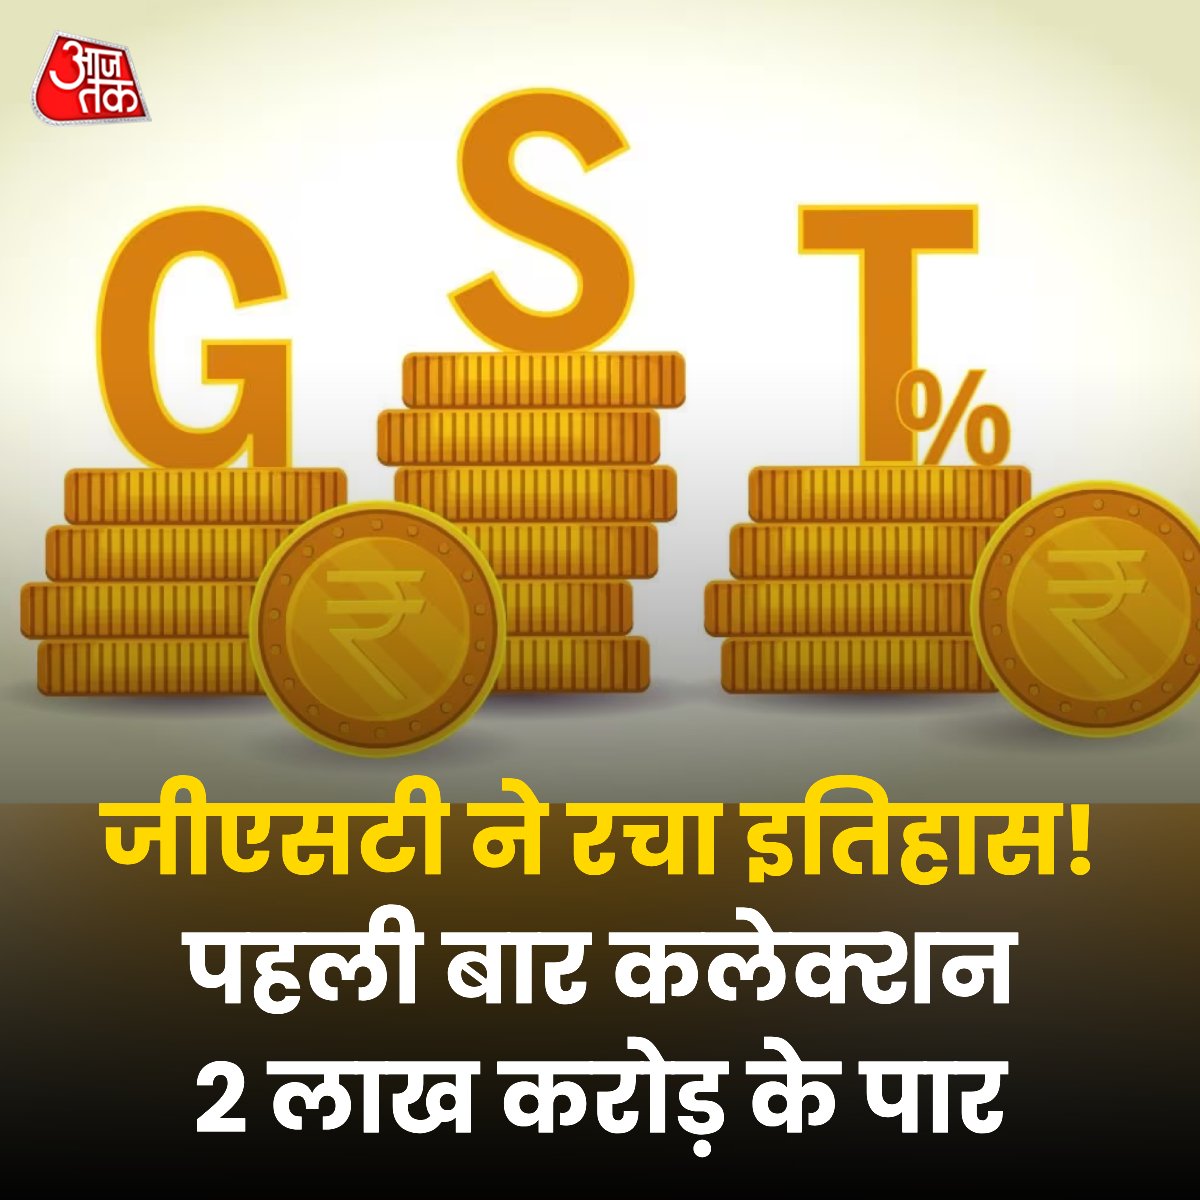 रिकॉर्डतोड़ GST कलेक्शन! अप्रैल 2024 में जीएसटी कलेक्शन ₹2 लाख करोड़ के मील के पत्थर को पार किया। महाराष्ट्र से सबसे अधिक 37,671 करोड़ कलेक्शन। सकल राजस्व में भी 12.4% की वार्षिक वृद्धि दर्ज की गई। भारत की यह उल्लेखनीय उपलब्धि हमारी समृद्ध अर्थव्यवस्था और प्रत्येक नागरिक के